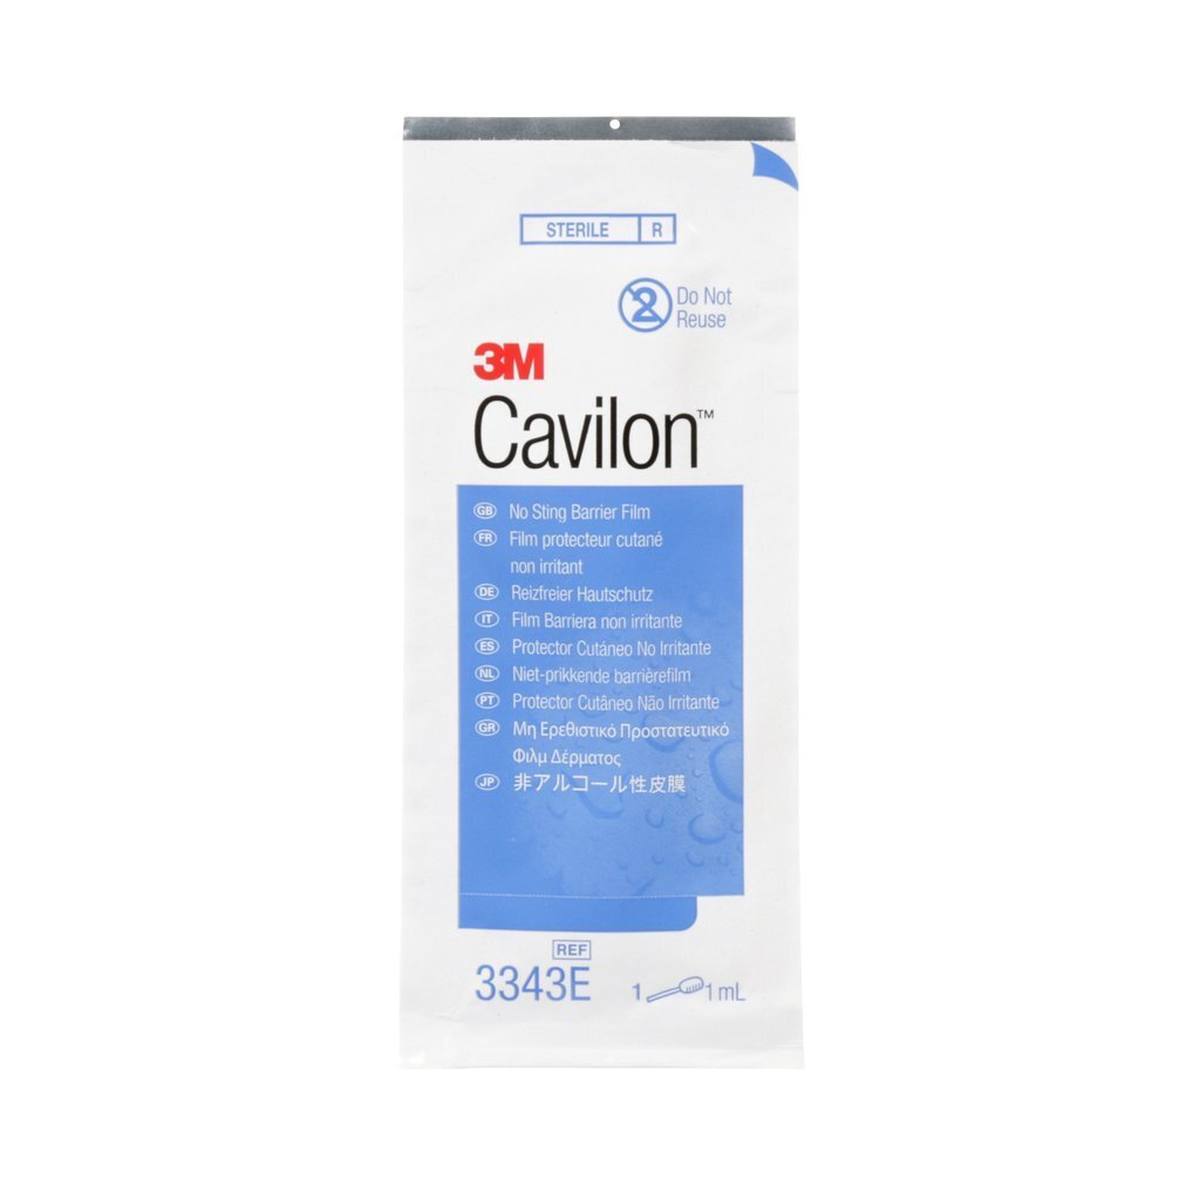 3M Cavilon protezione della pelle non irritante 3343E, applicatore in schiuma da 1 ml